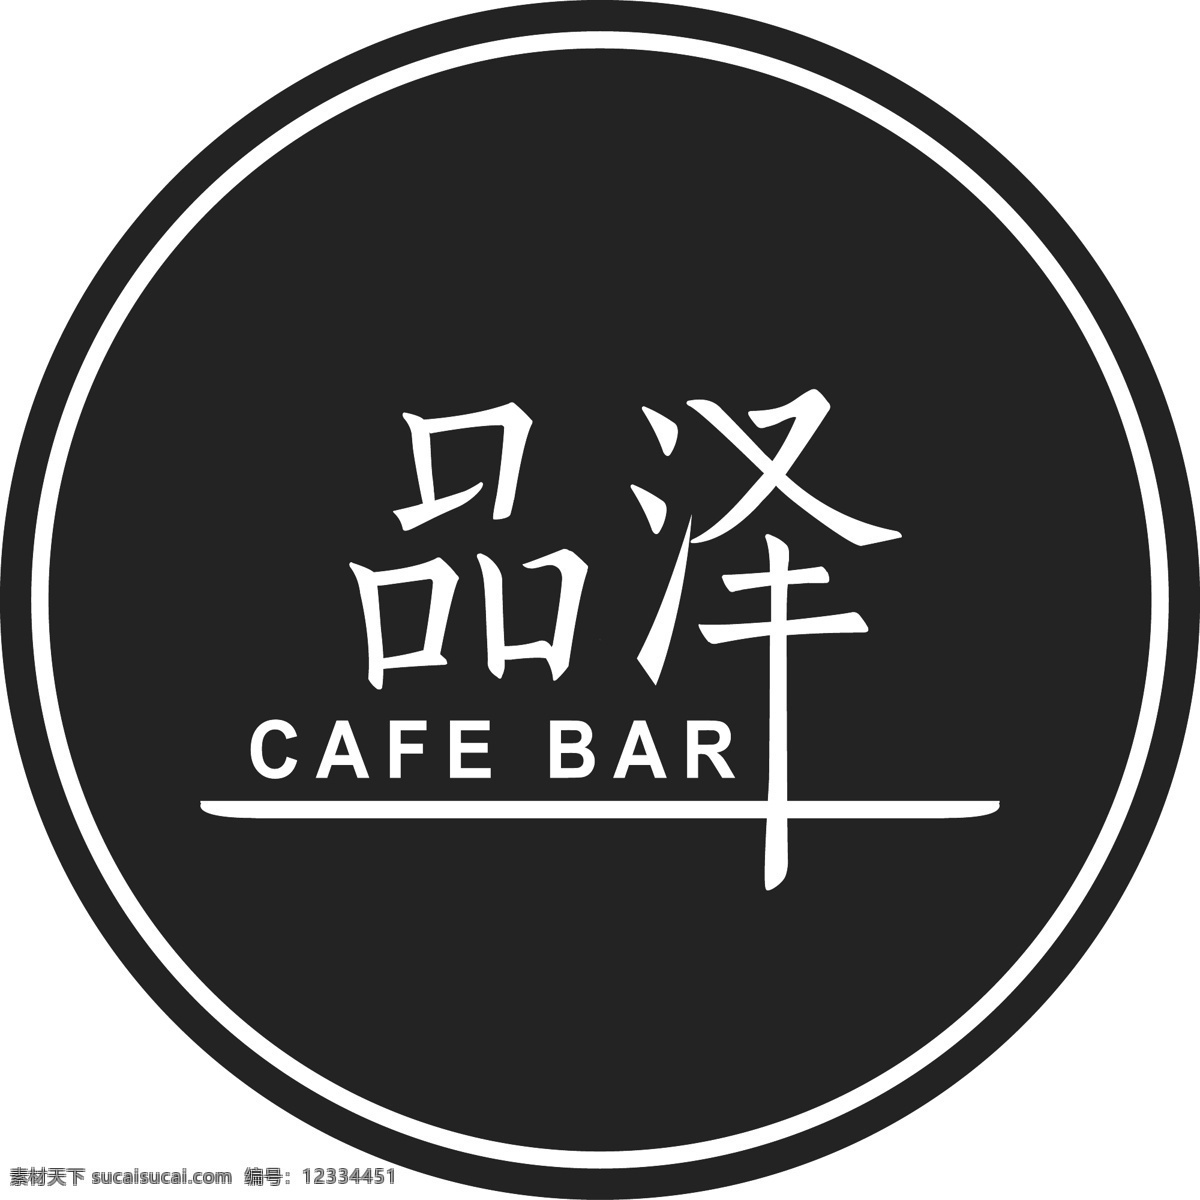 咖啡屋 咖啡店 咖啡logo 咖啡图标 矢量 设计素材 咖啡杯 咖啡壶 咖啡豆 咖啡标签 节日素材